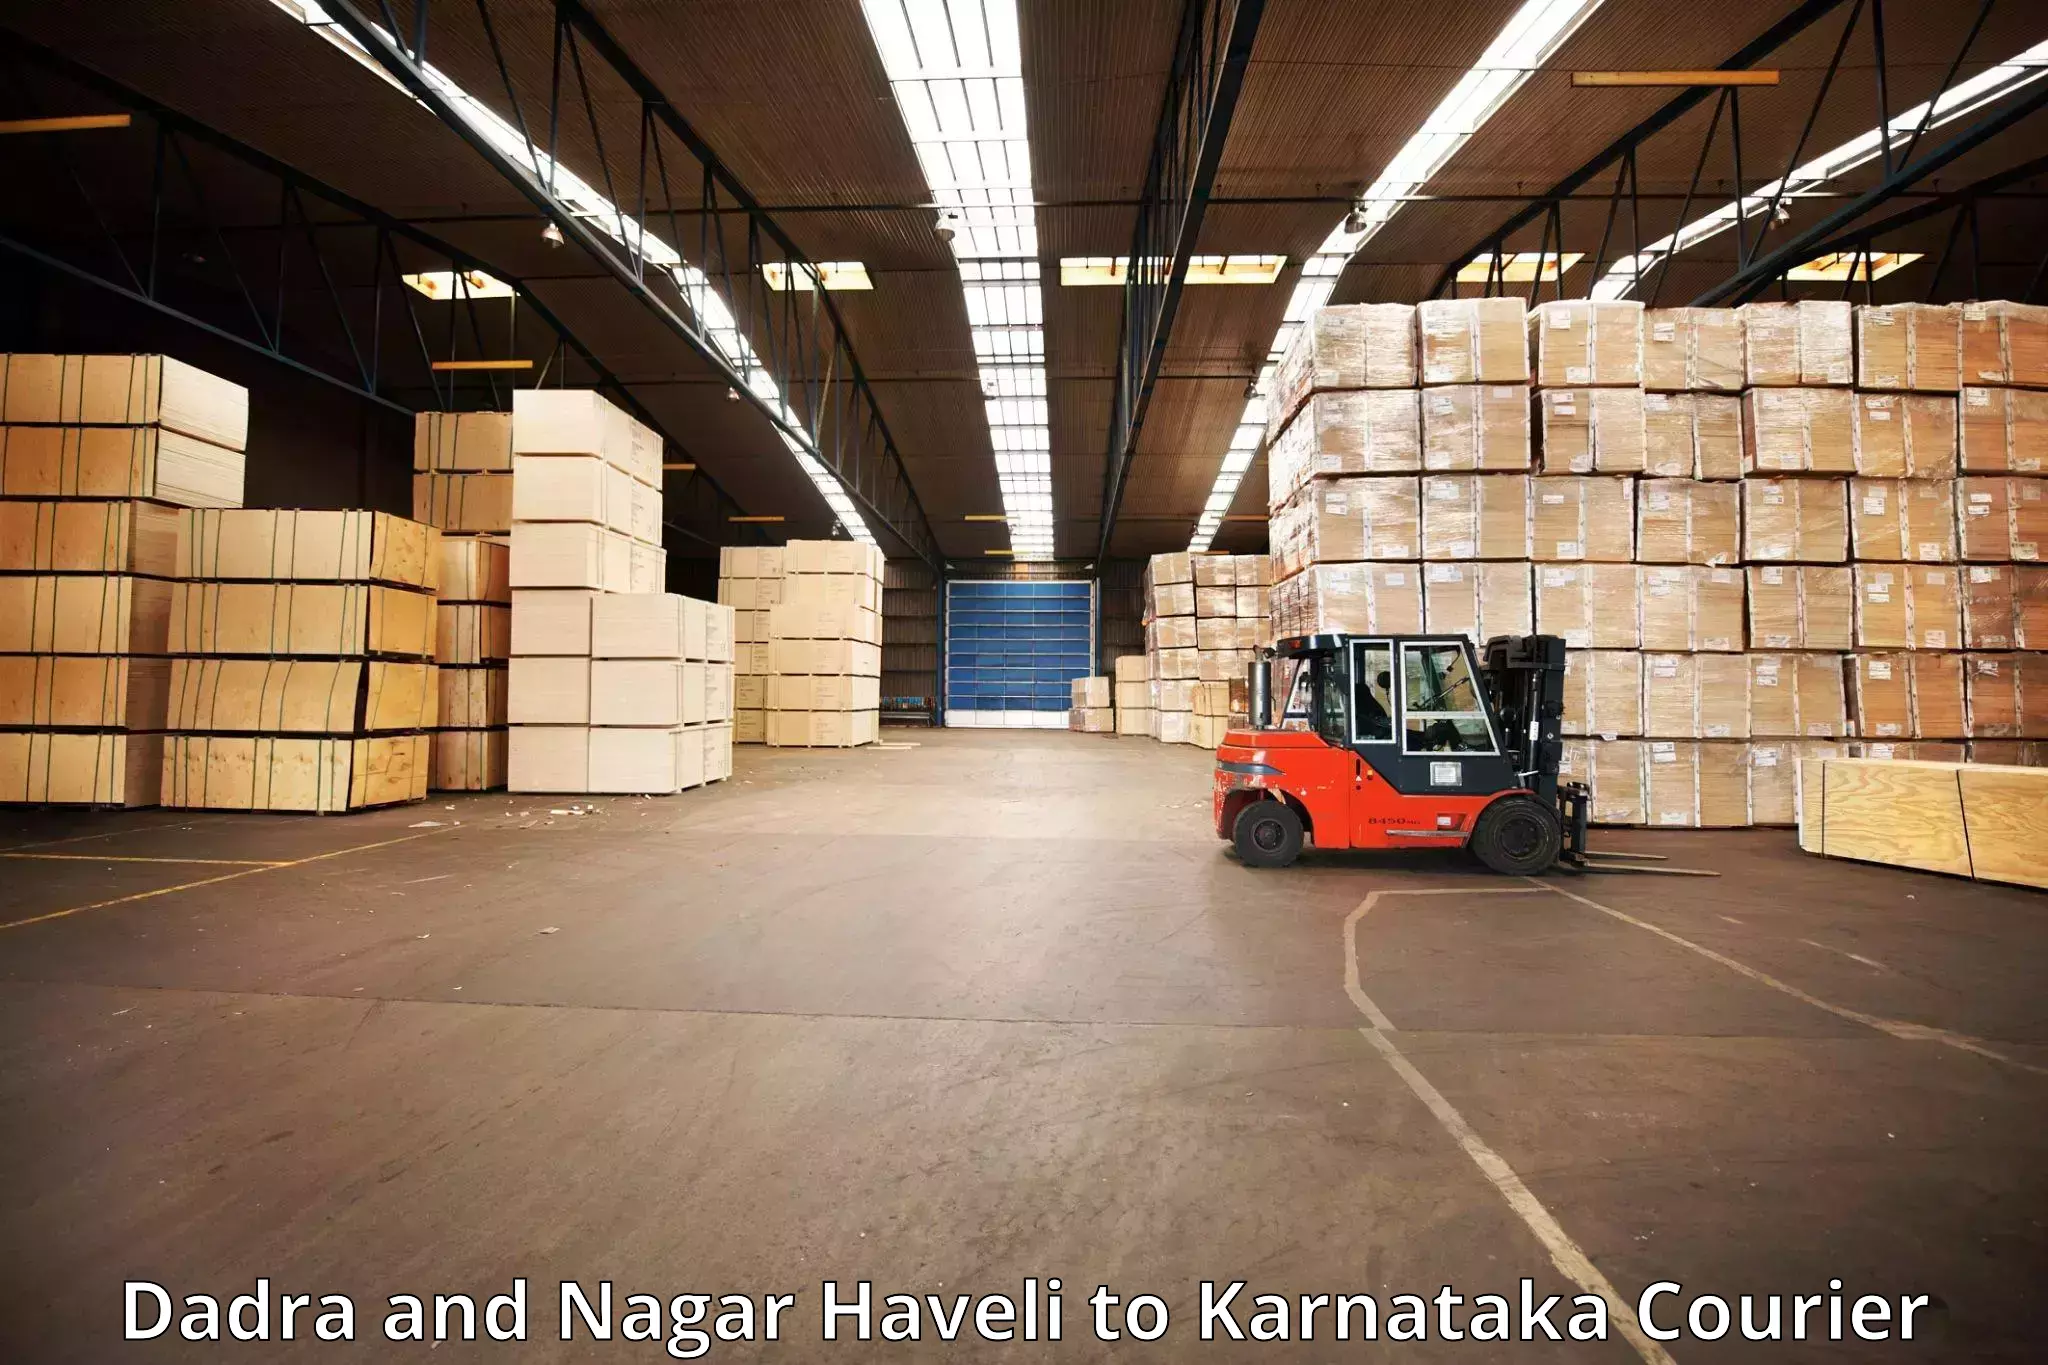 Luggage courier network Dadra and Nagar Haveli to Kalaghatgi